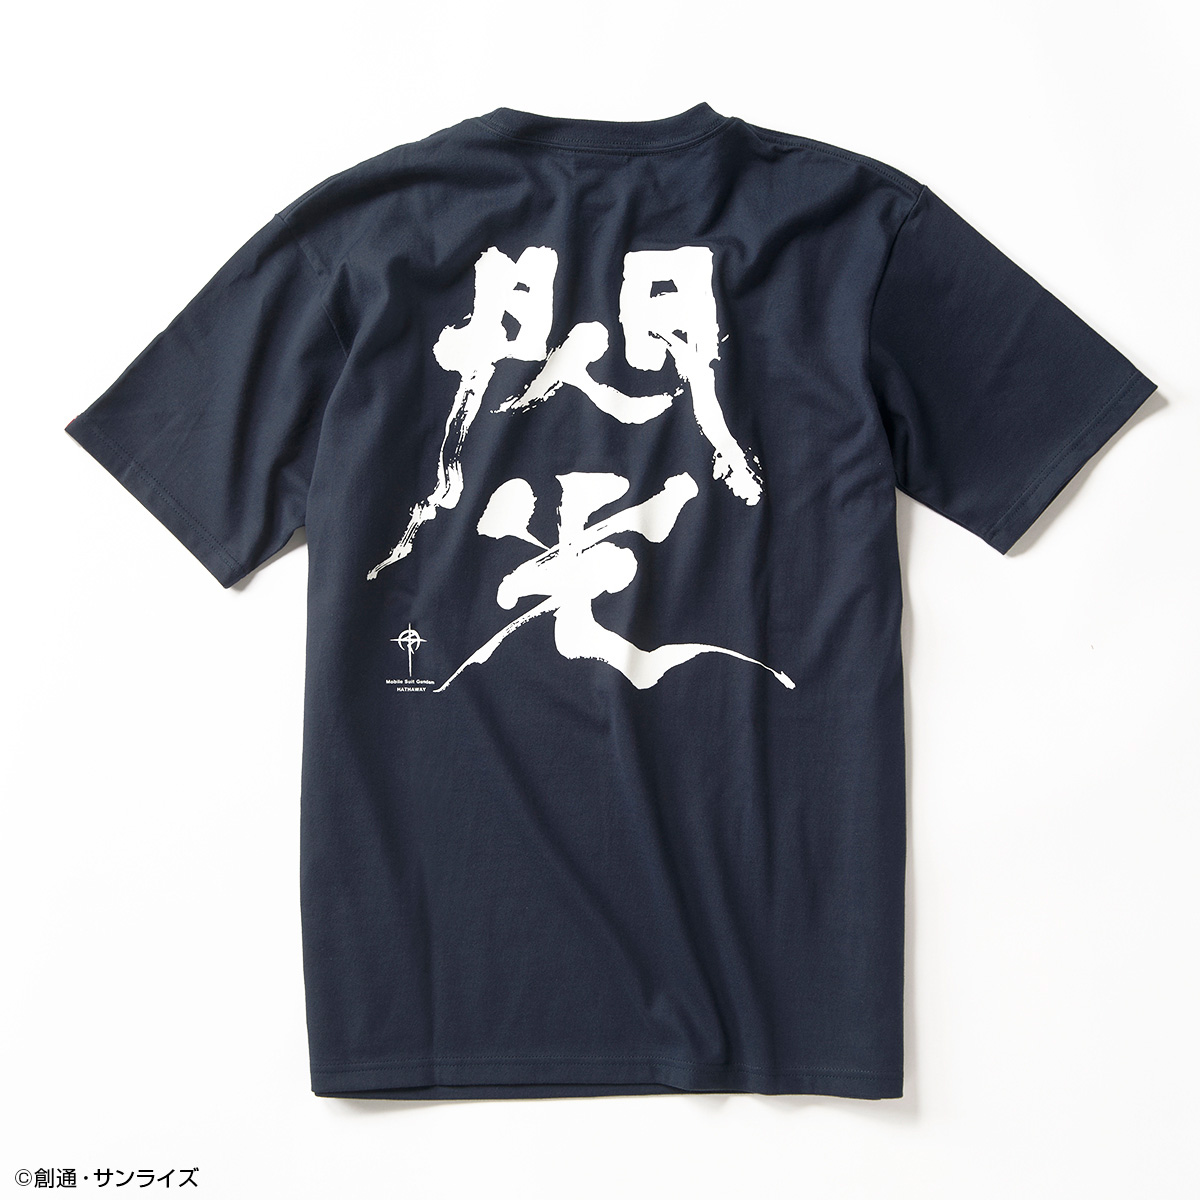 STRICT-G JAPAN『機動戦士ガンダム 閃光のハサウェイ』Tシャツ 筆絵風「Ξ」(クスィー)ガンダム柄